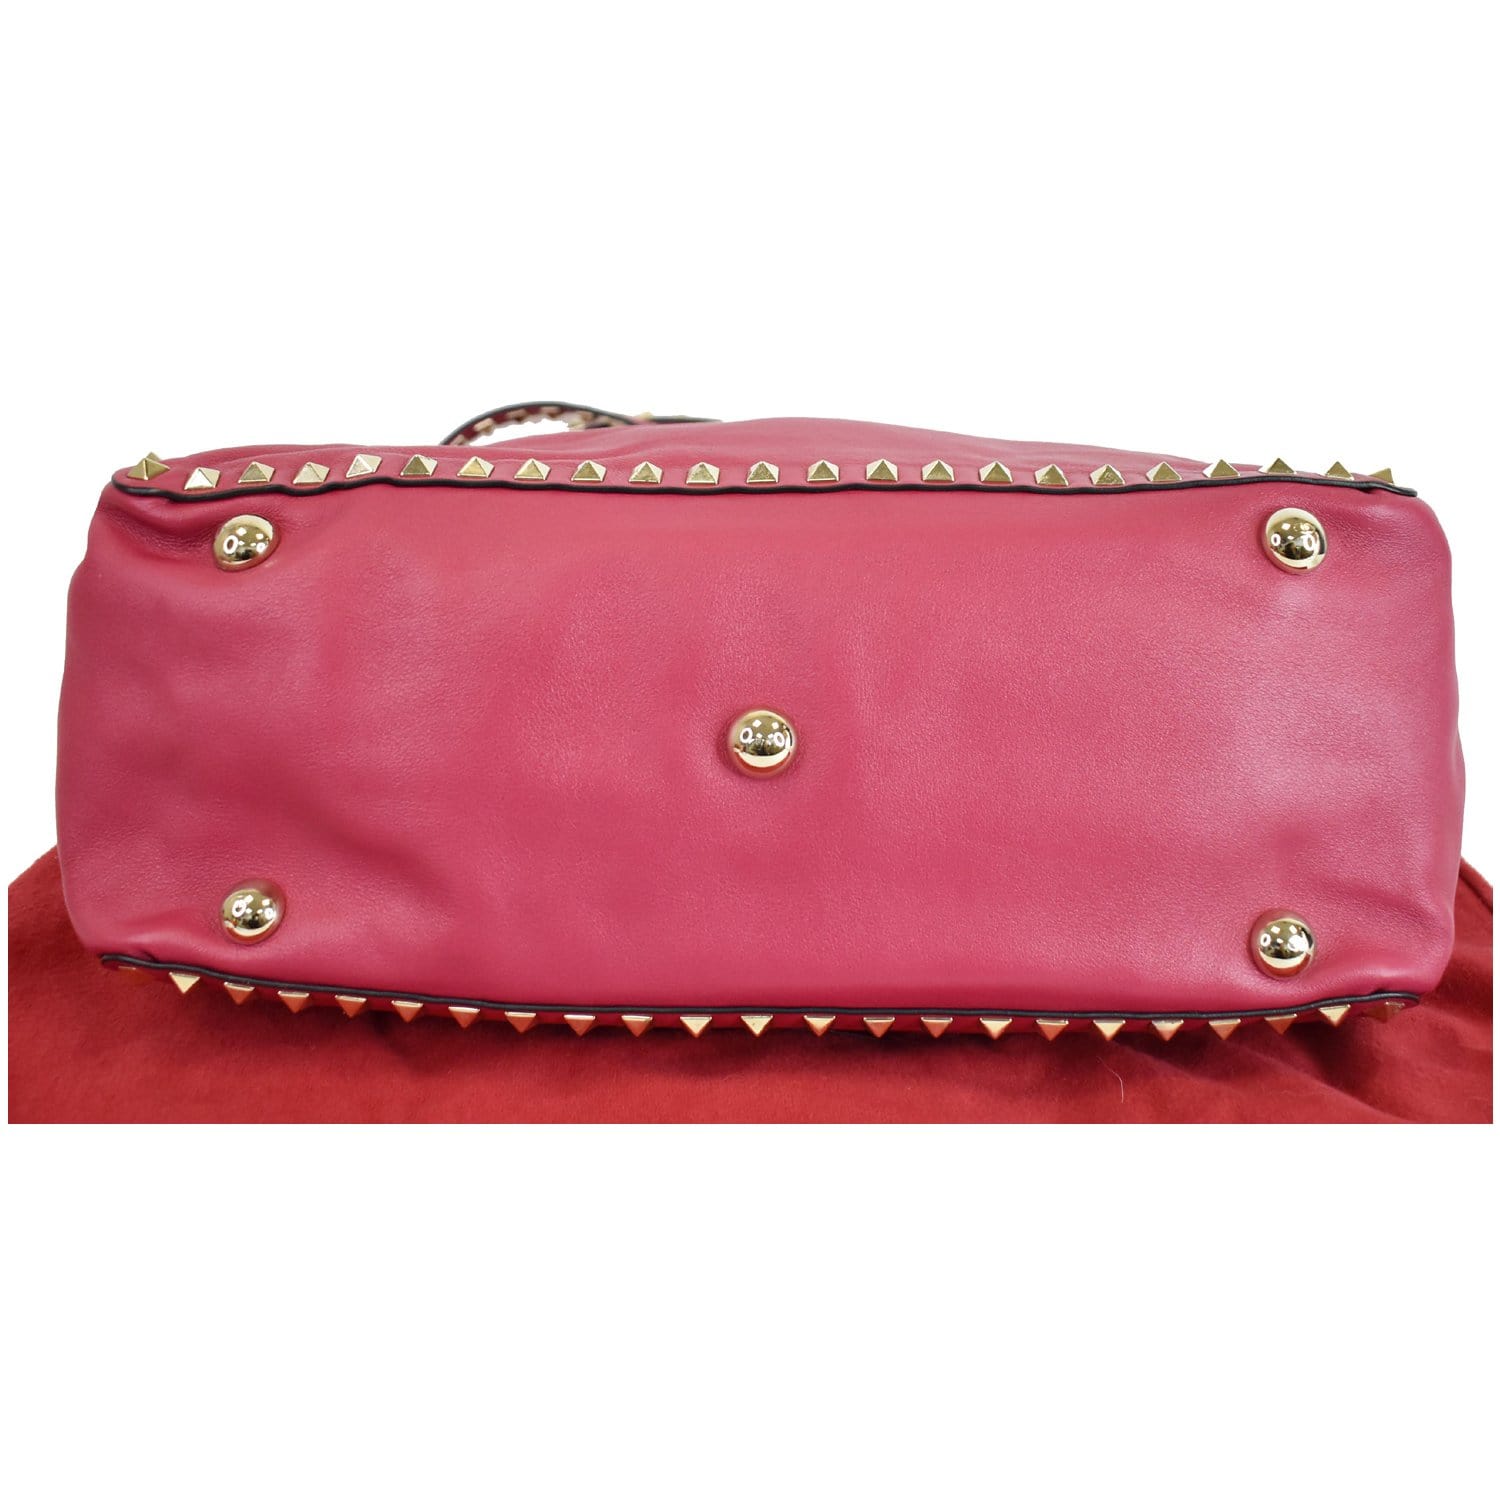 VALENTINO Rockstud Leather Medium Shoulder Bag Pink